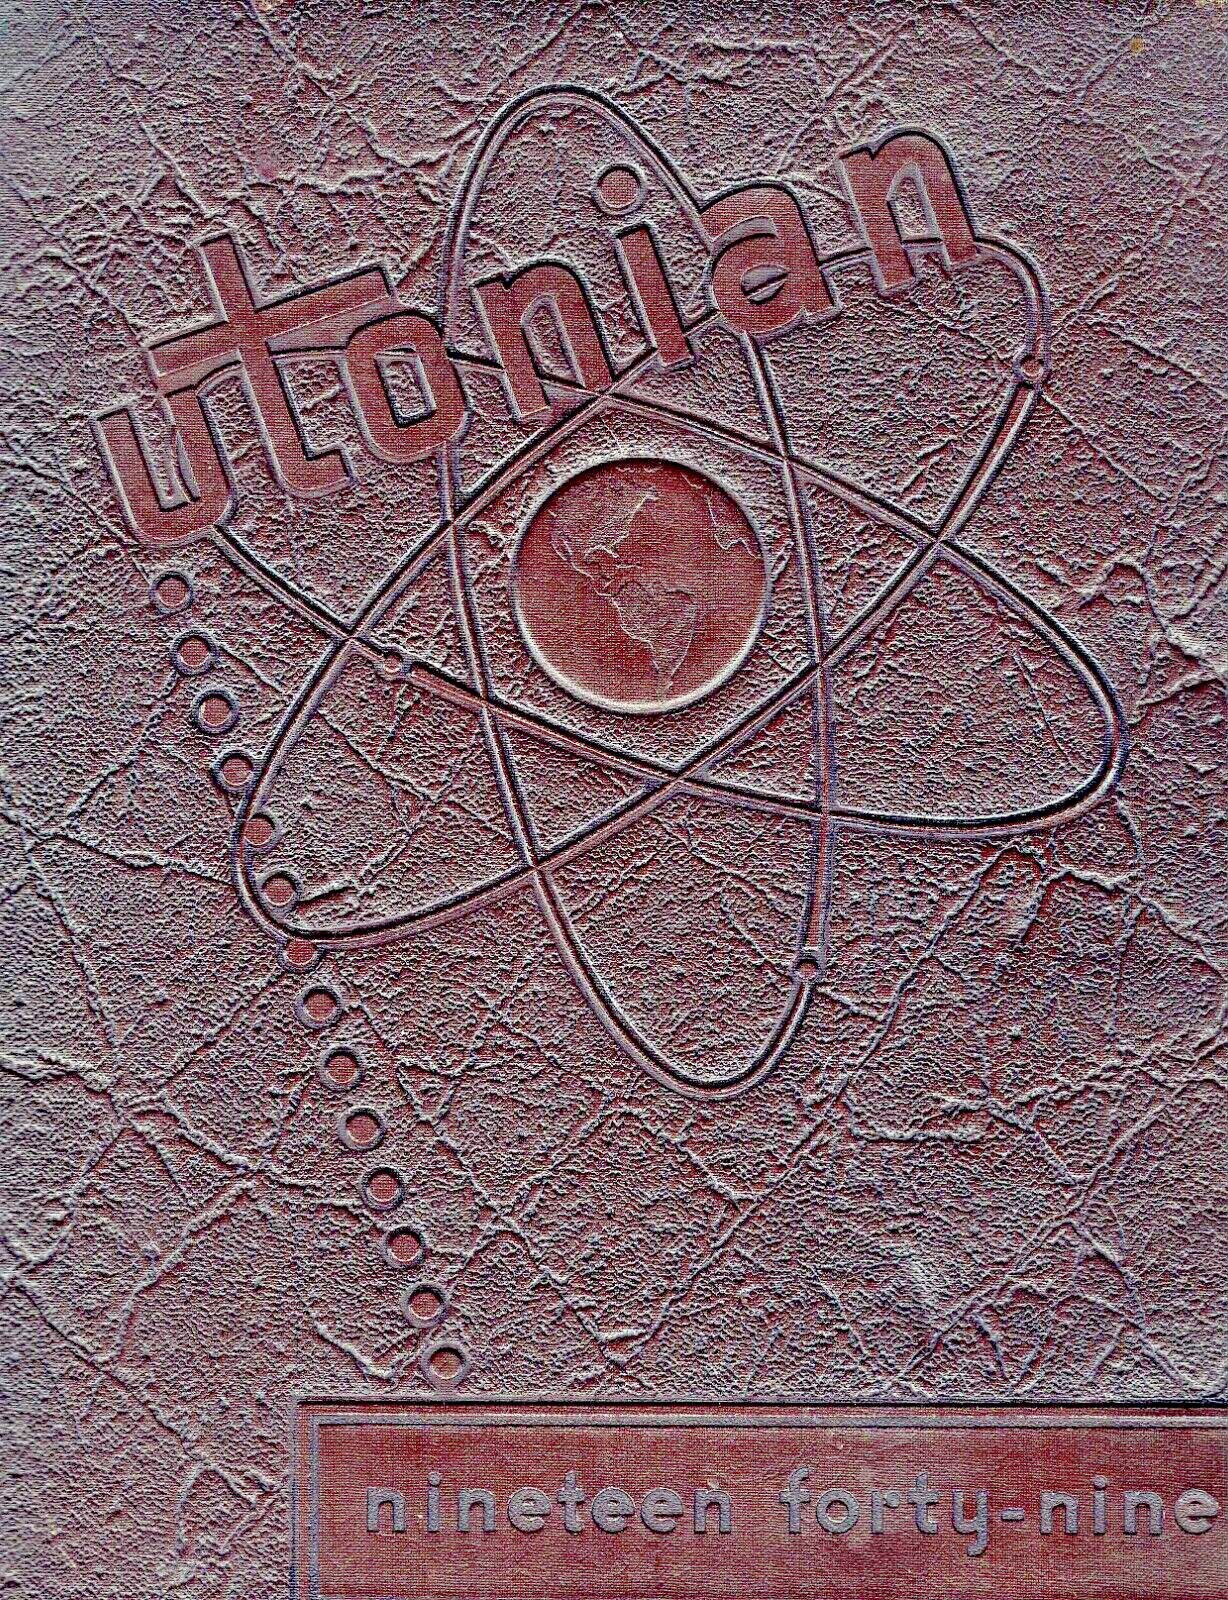 1949 University of Utah Yearbook, Utonian, Salt Lake City, Utah